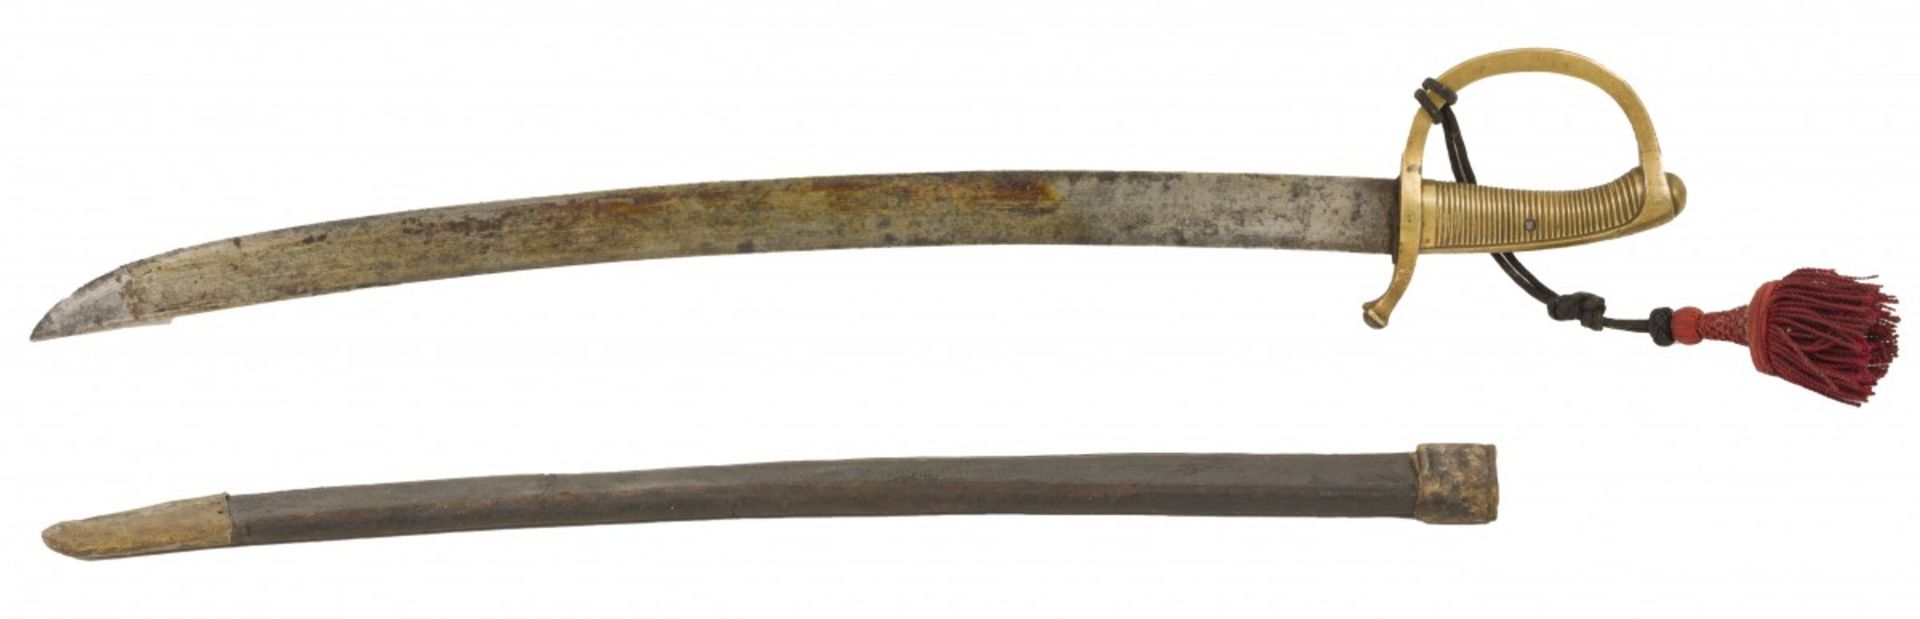 A briquet infantry saber / short sword, Dutch, 19th century. - Bild 2 aus 3